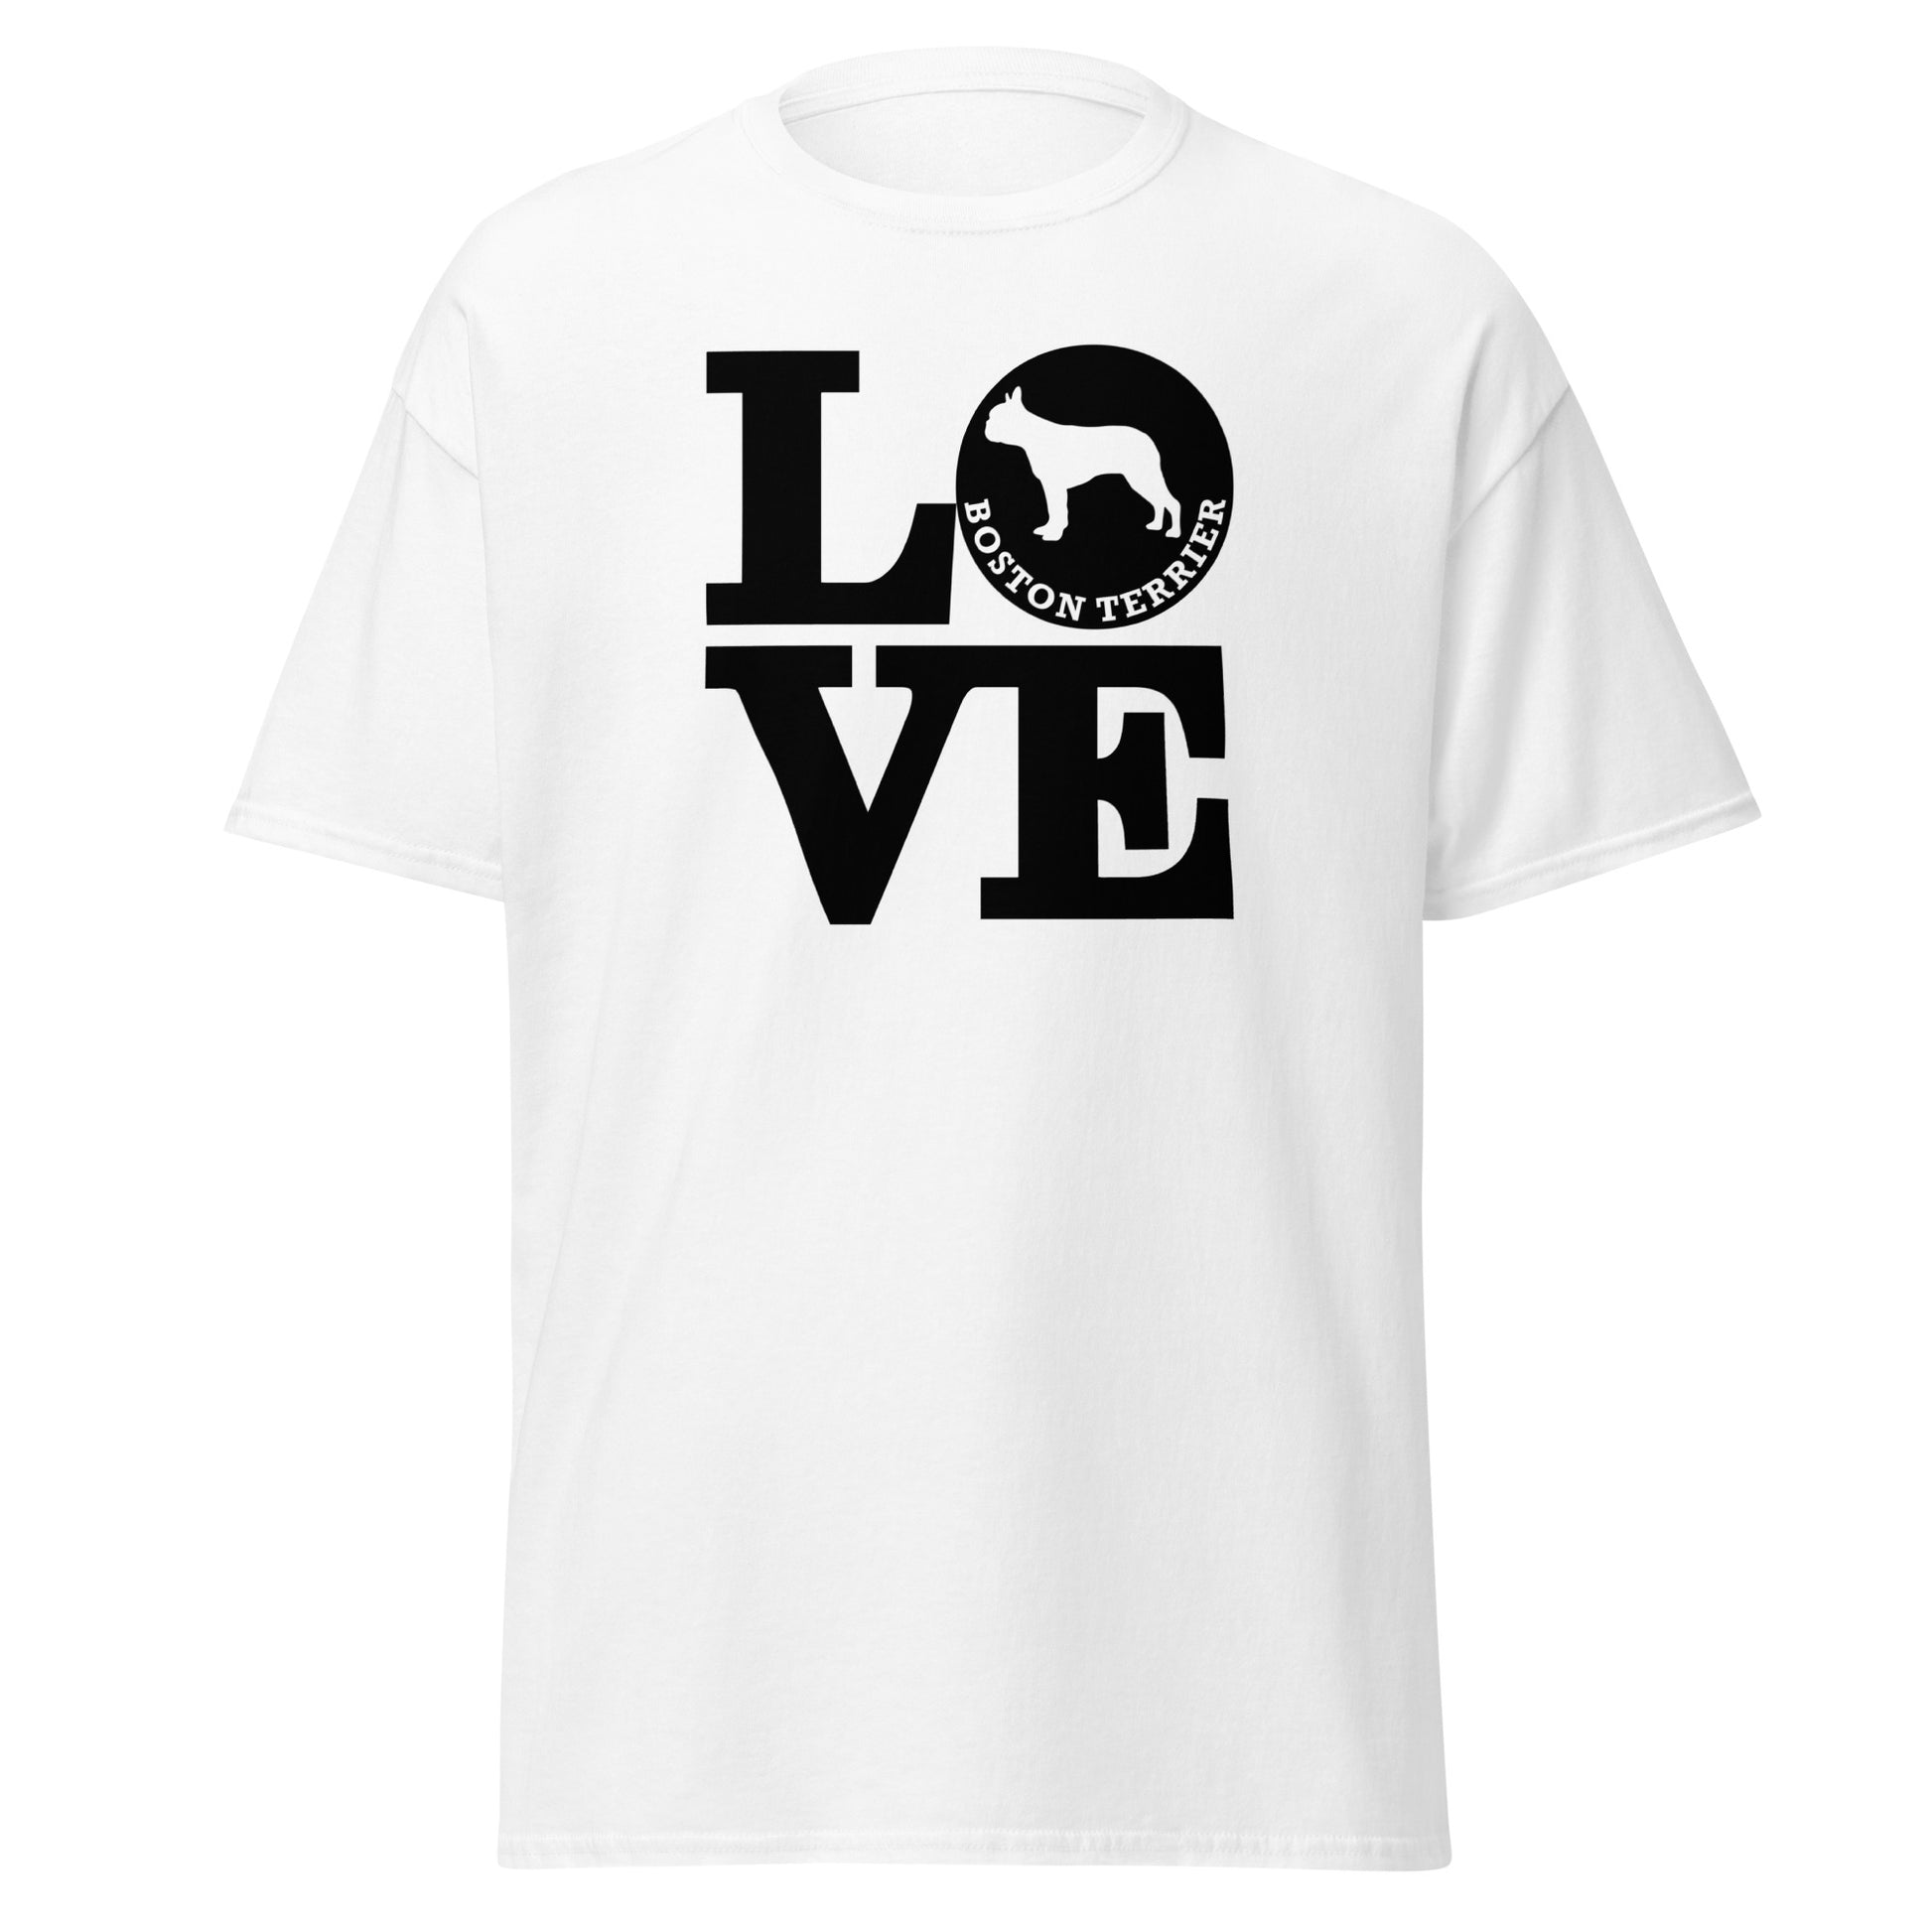 Boston Terrier Love men’s white t-shirt by Dog Artistry.